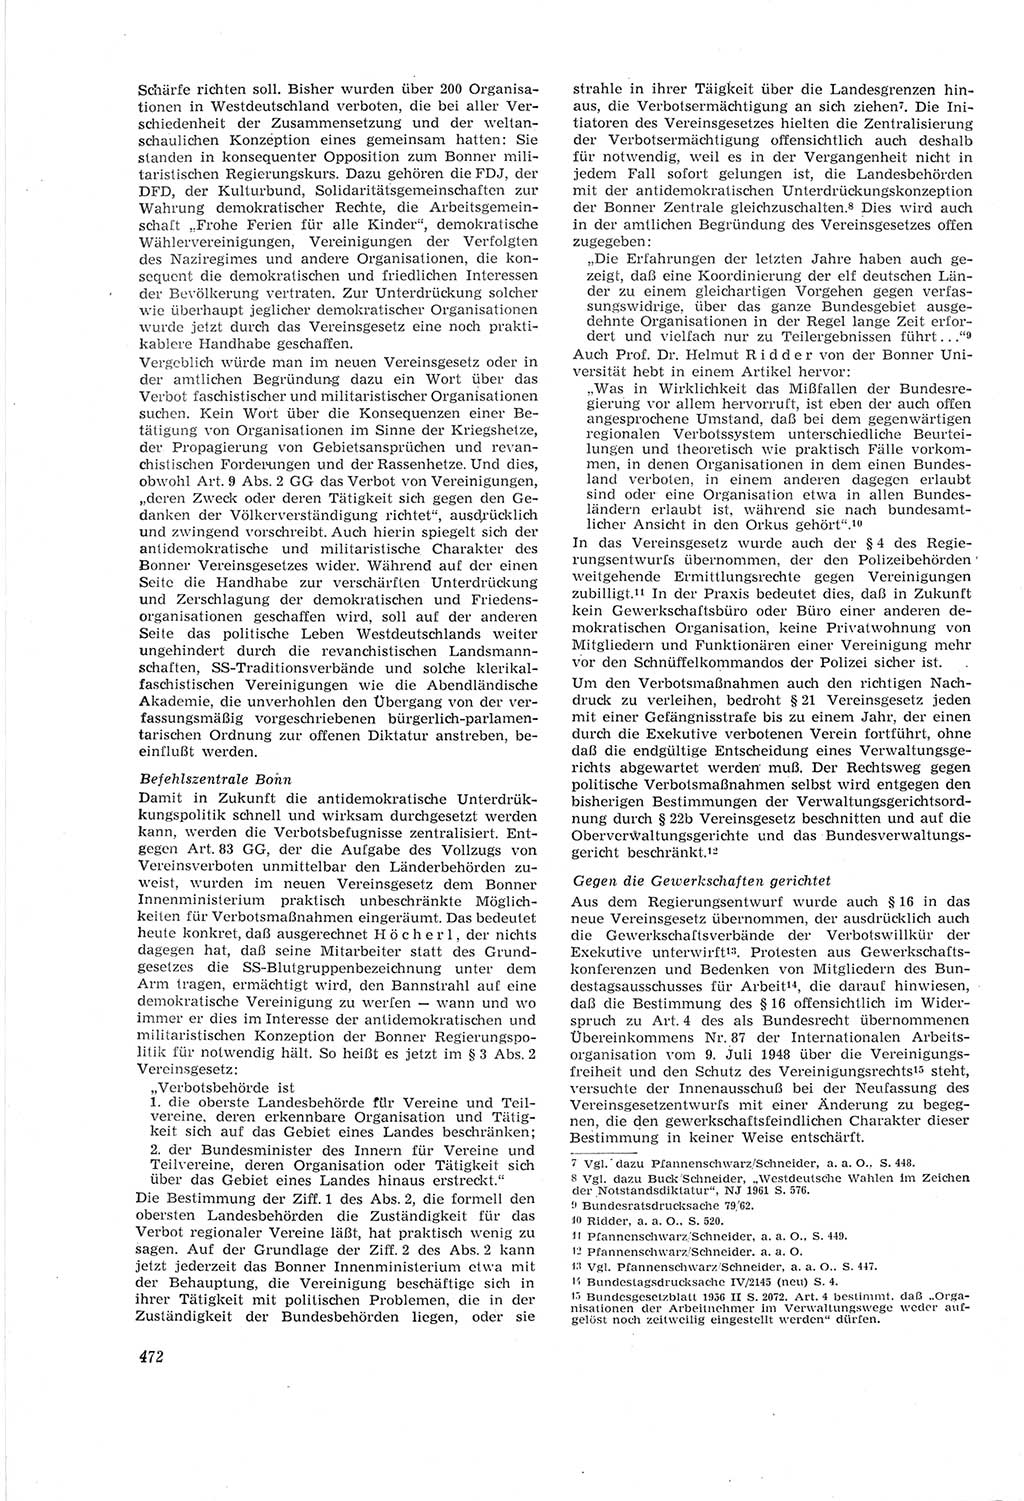 Neue Justiz (NJ), Zeitschrift für Recht und Rechtswissenschaft [Deutsche Demokratische Republik (DDR)], 18. Jahrgang 1964, Seite 472 (NJ DDR 1964, S. 472)